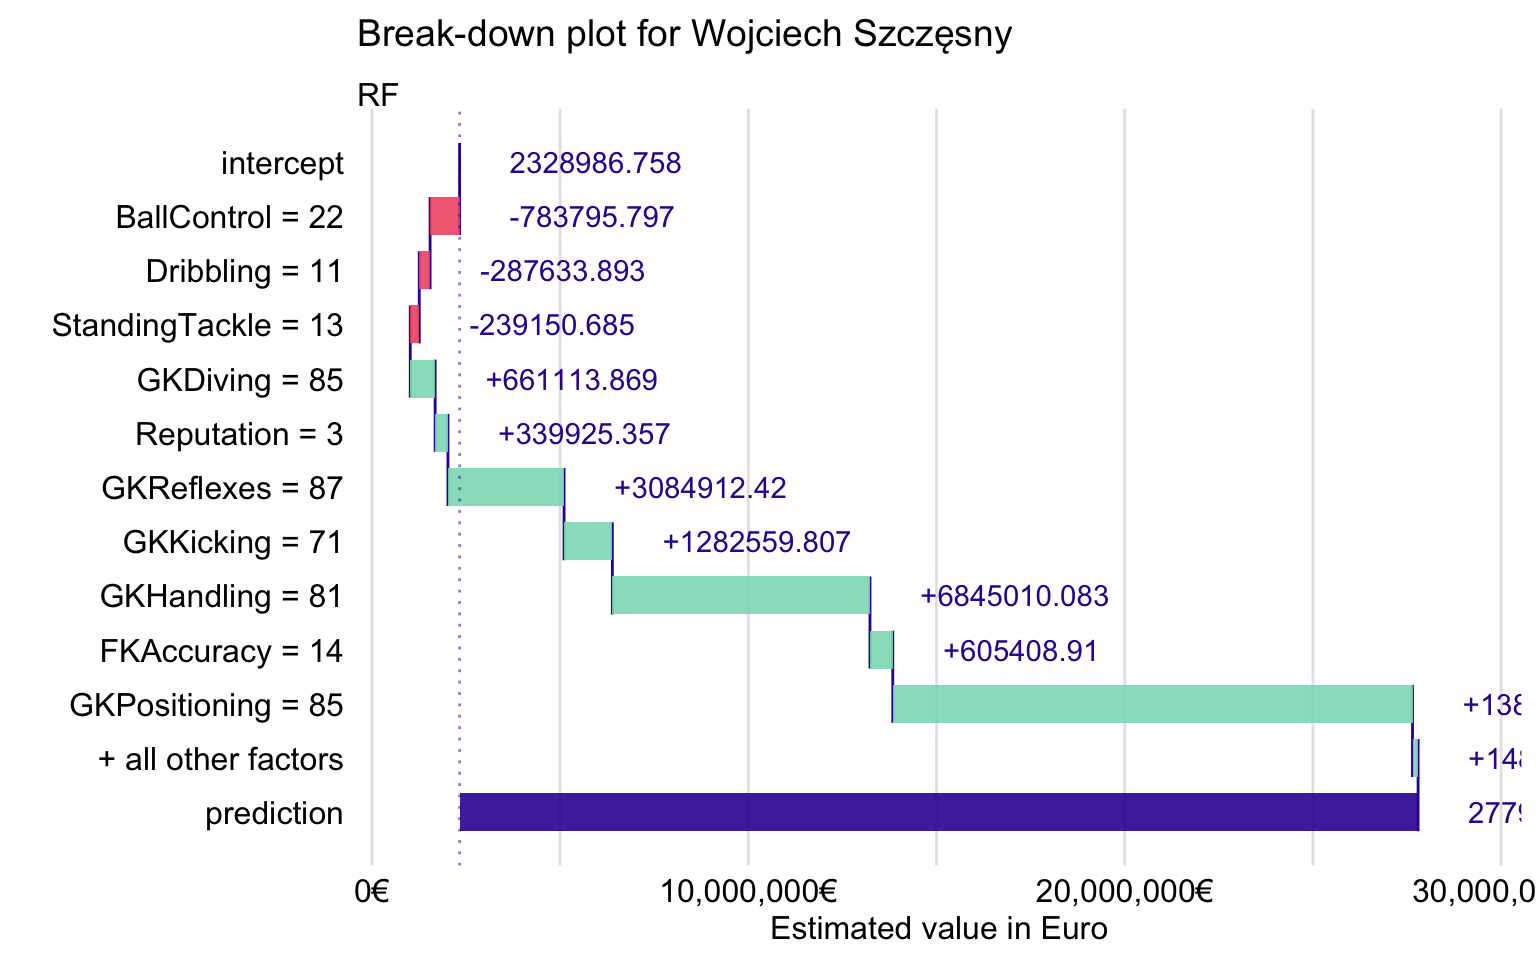 Break-down plot for Wojciech Szczęsny for the random forest model.